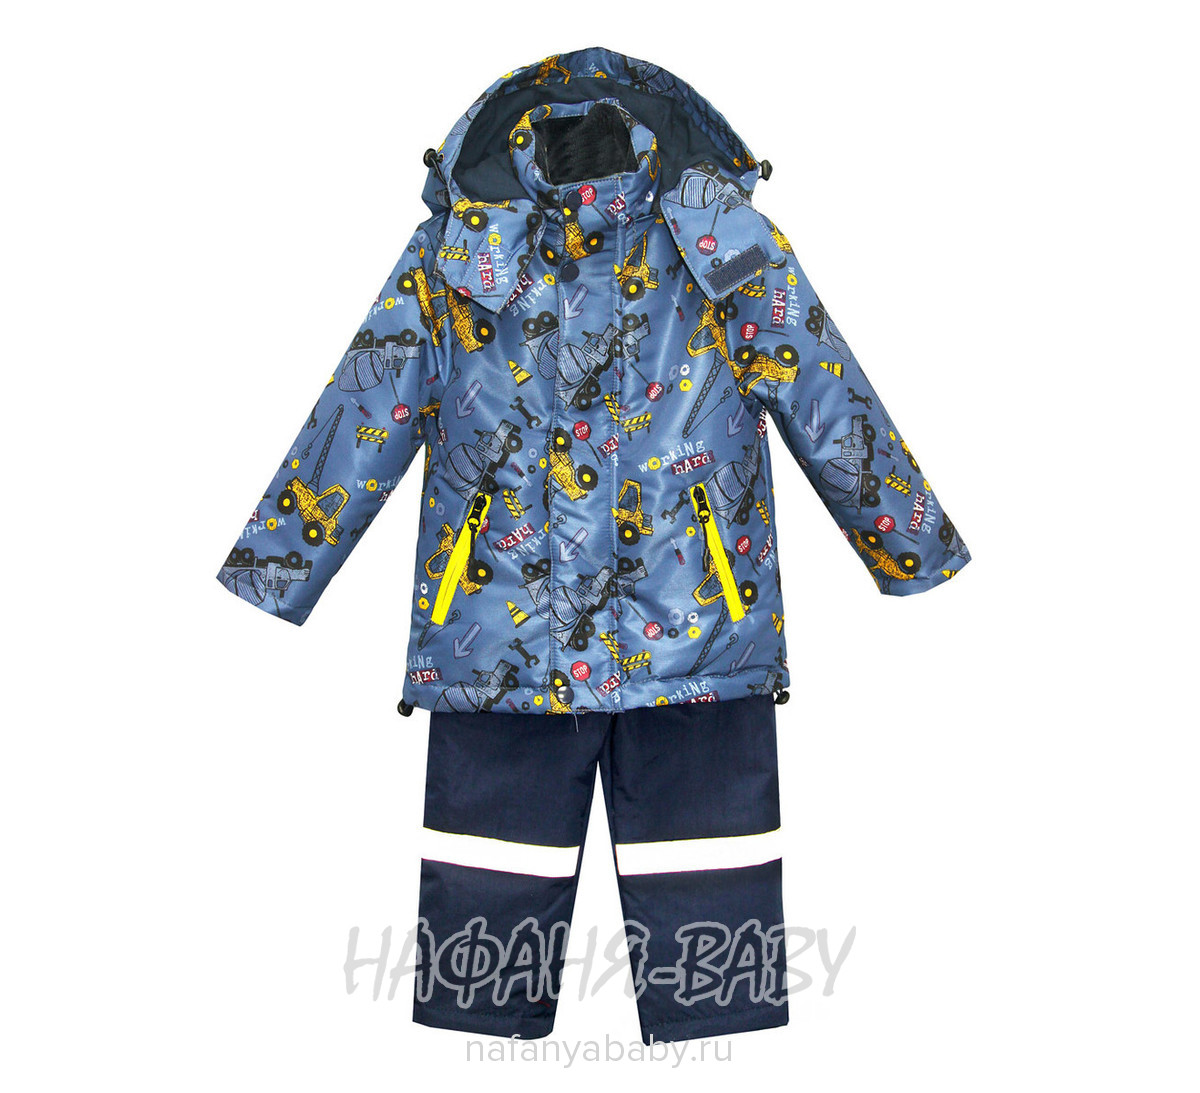 Детский костюм BOTCHKOVA арт: 883, 1-4 года, 5-9 лет, цвет куртка сине-серый, полукомбинезон темно-синий, оптом Китай (Пекин)